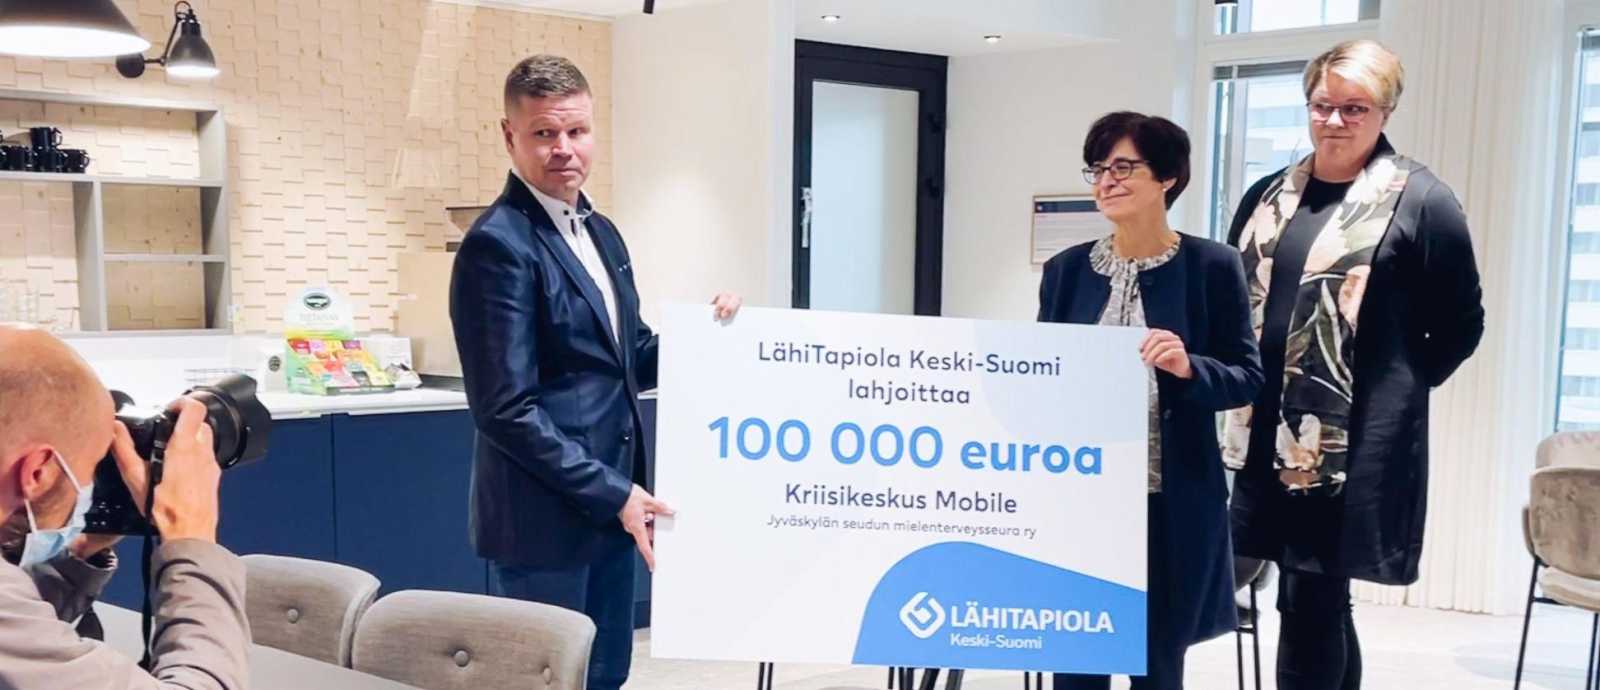 LähiTapiola Keski-Suomen lahjoitus kriisikeskus Mobilelle.